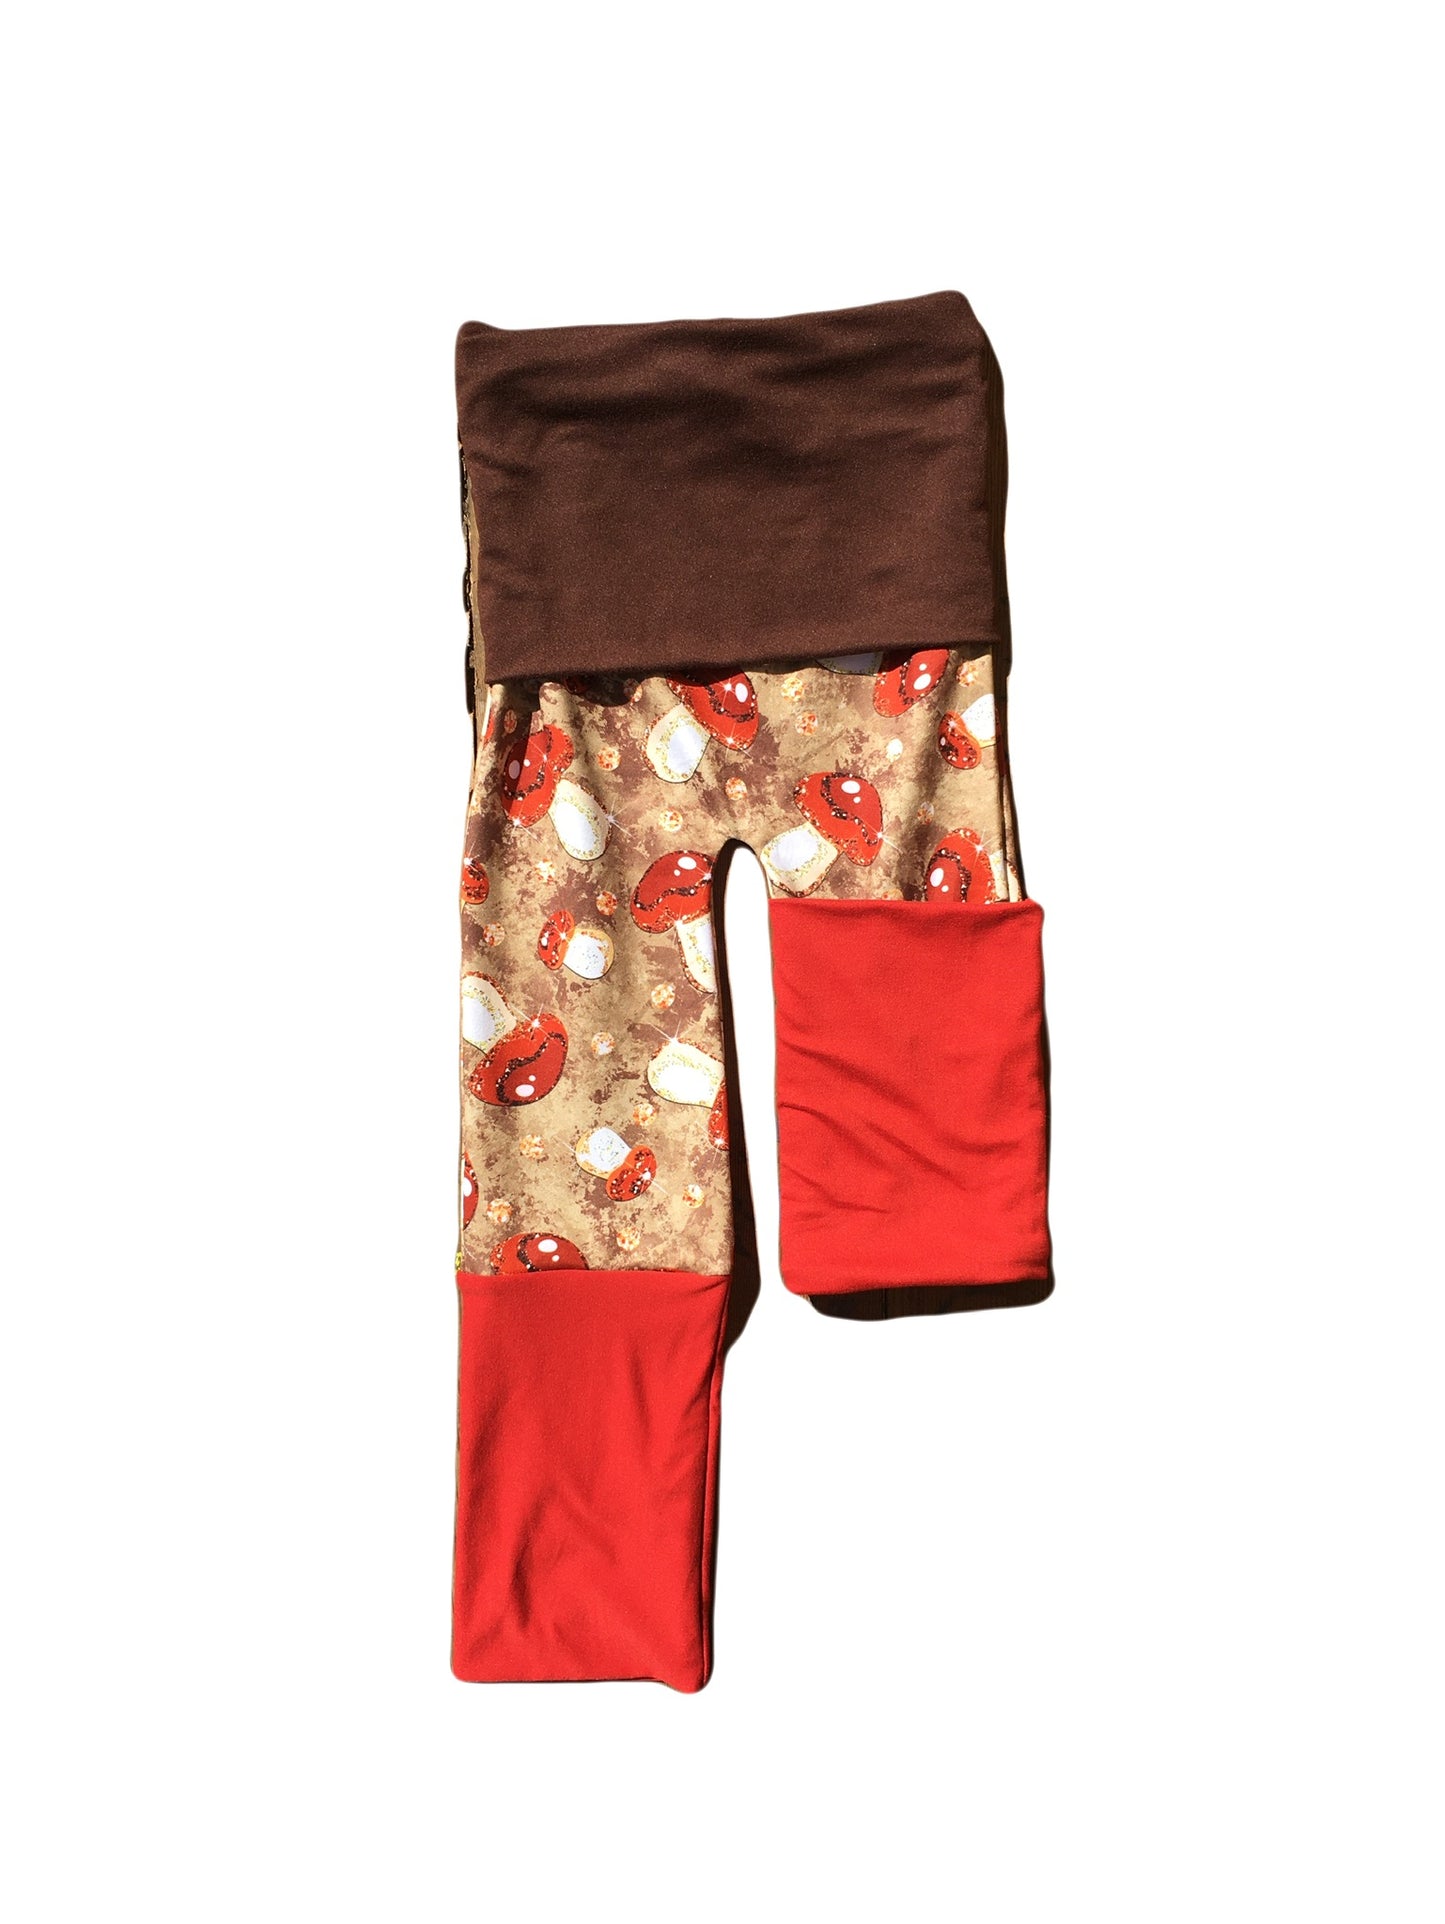 Adjustable Pants - Amanitas with Brown & Rust